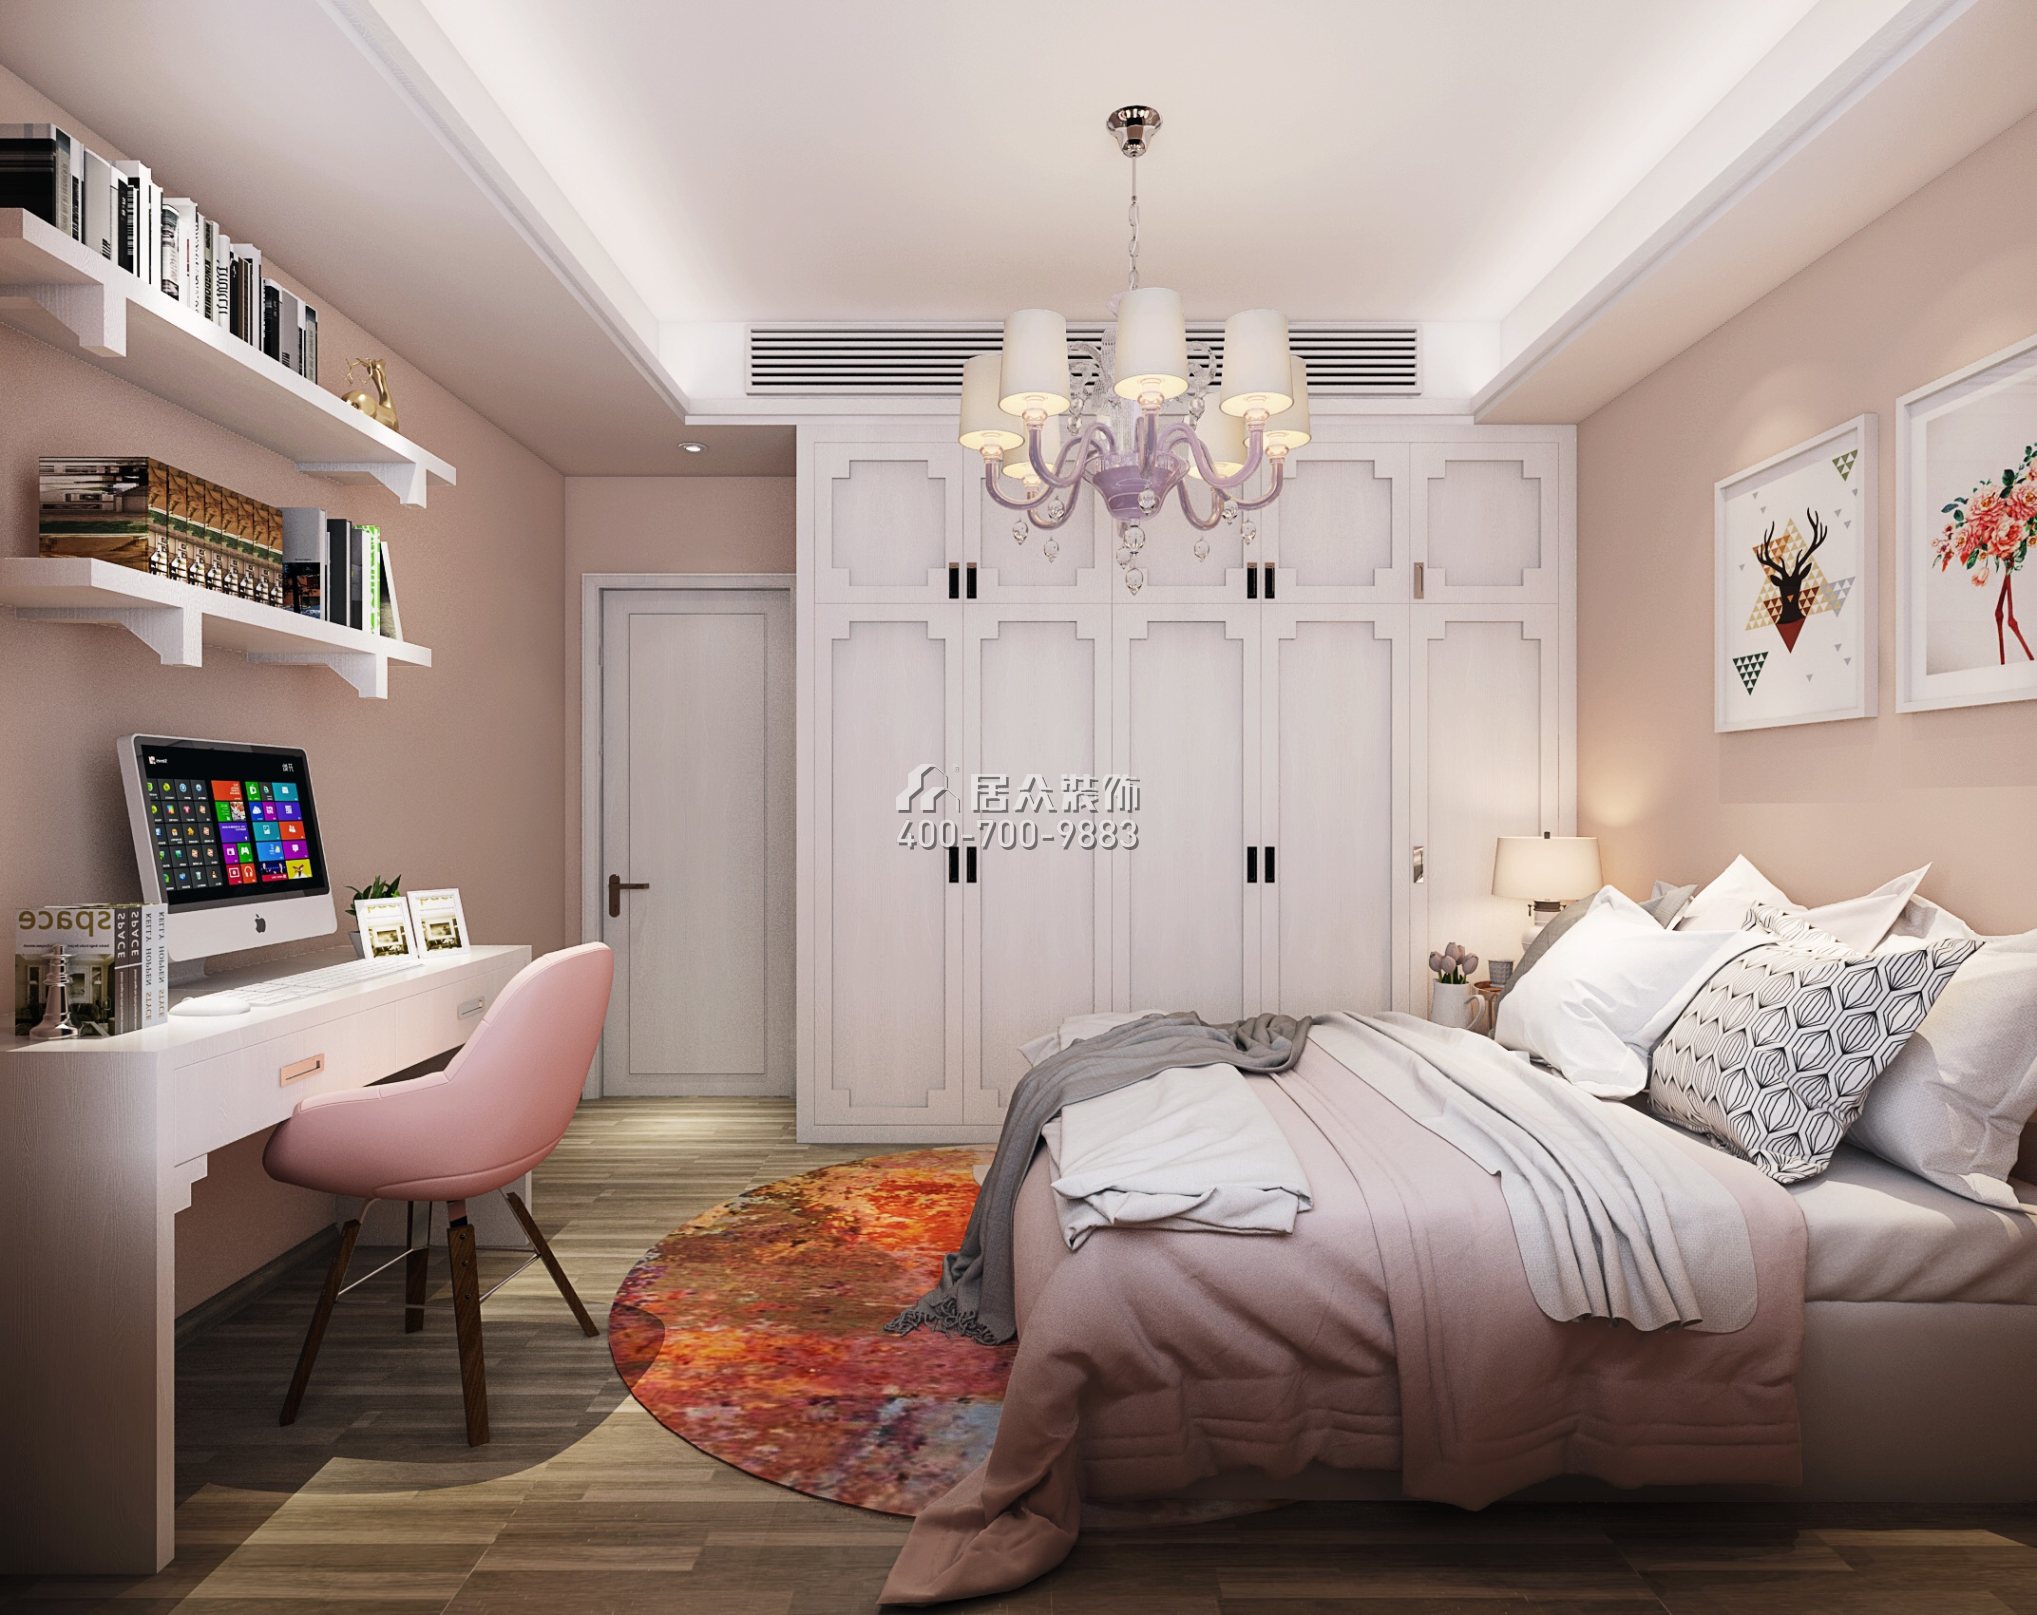 恒大华府140平方米中式风格平层户型卧室装修效果图